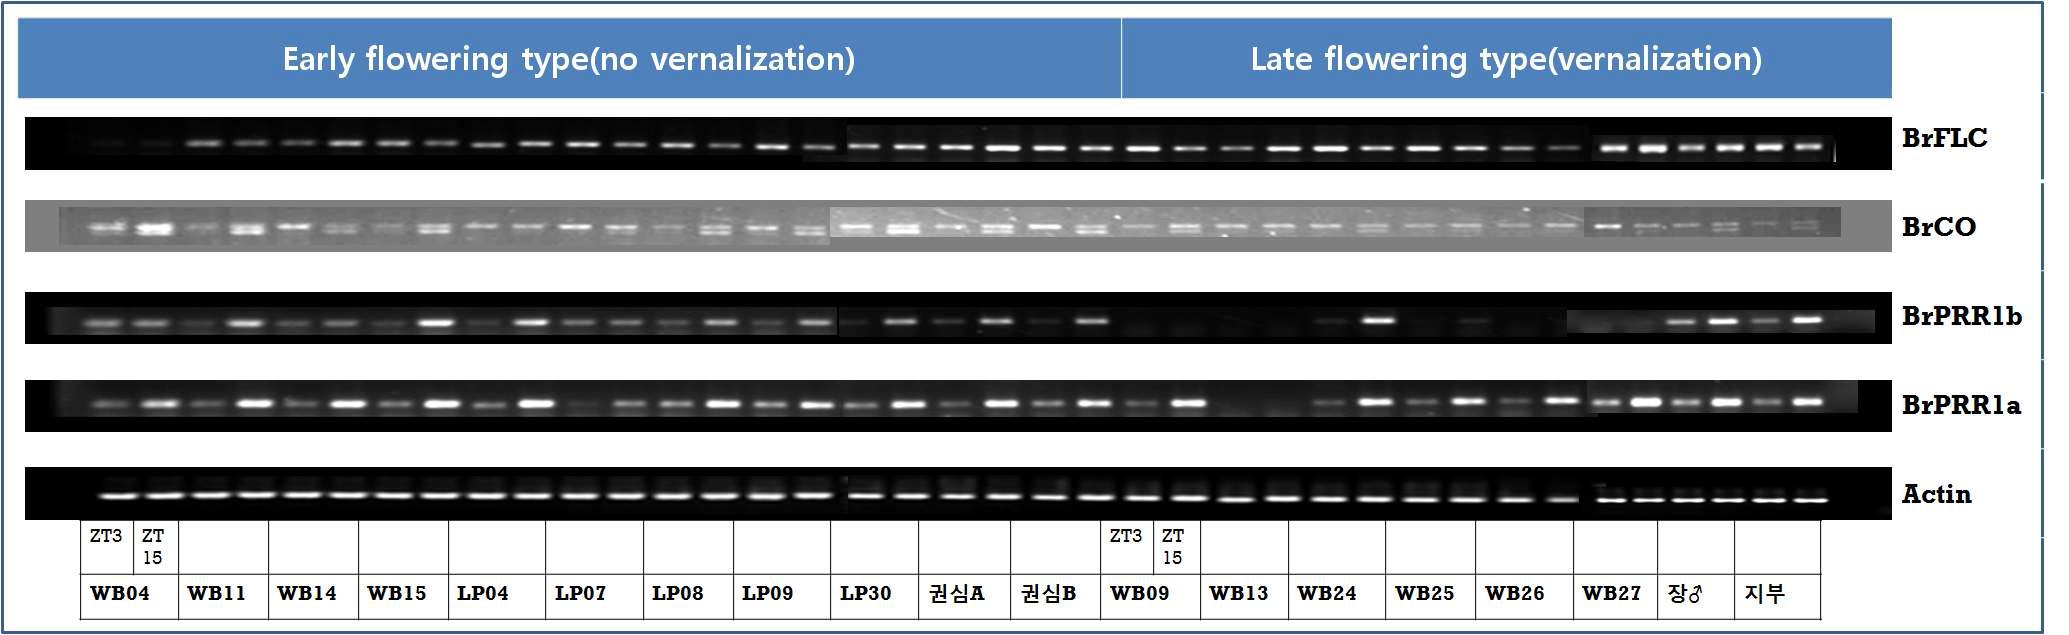 오전과 오후(ZT3과 ZT15)의 개화 유전자(BrCO와 BrFLC) 및 생체리듬